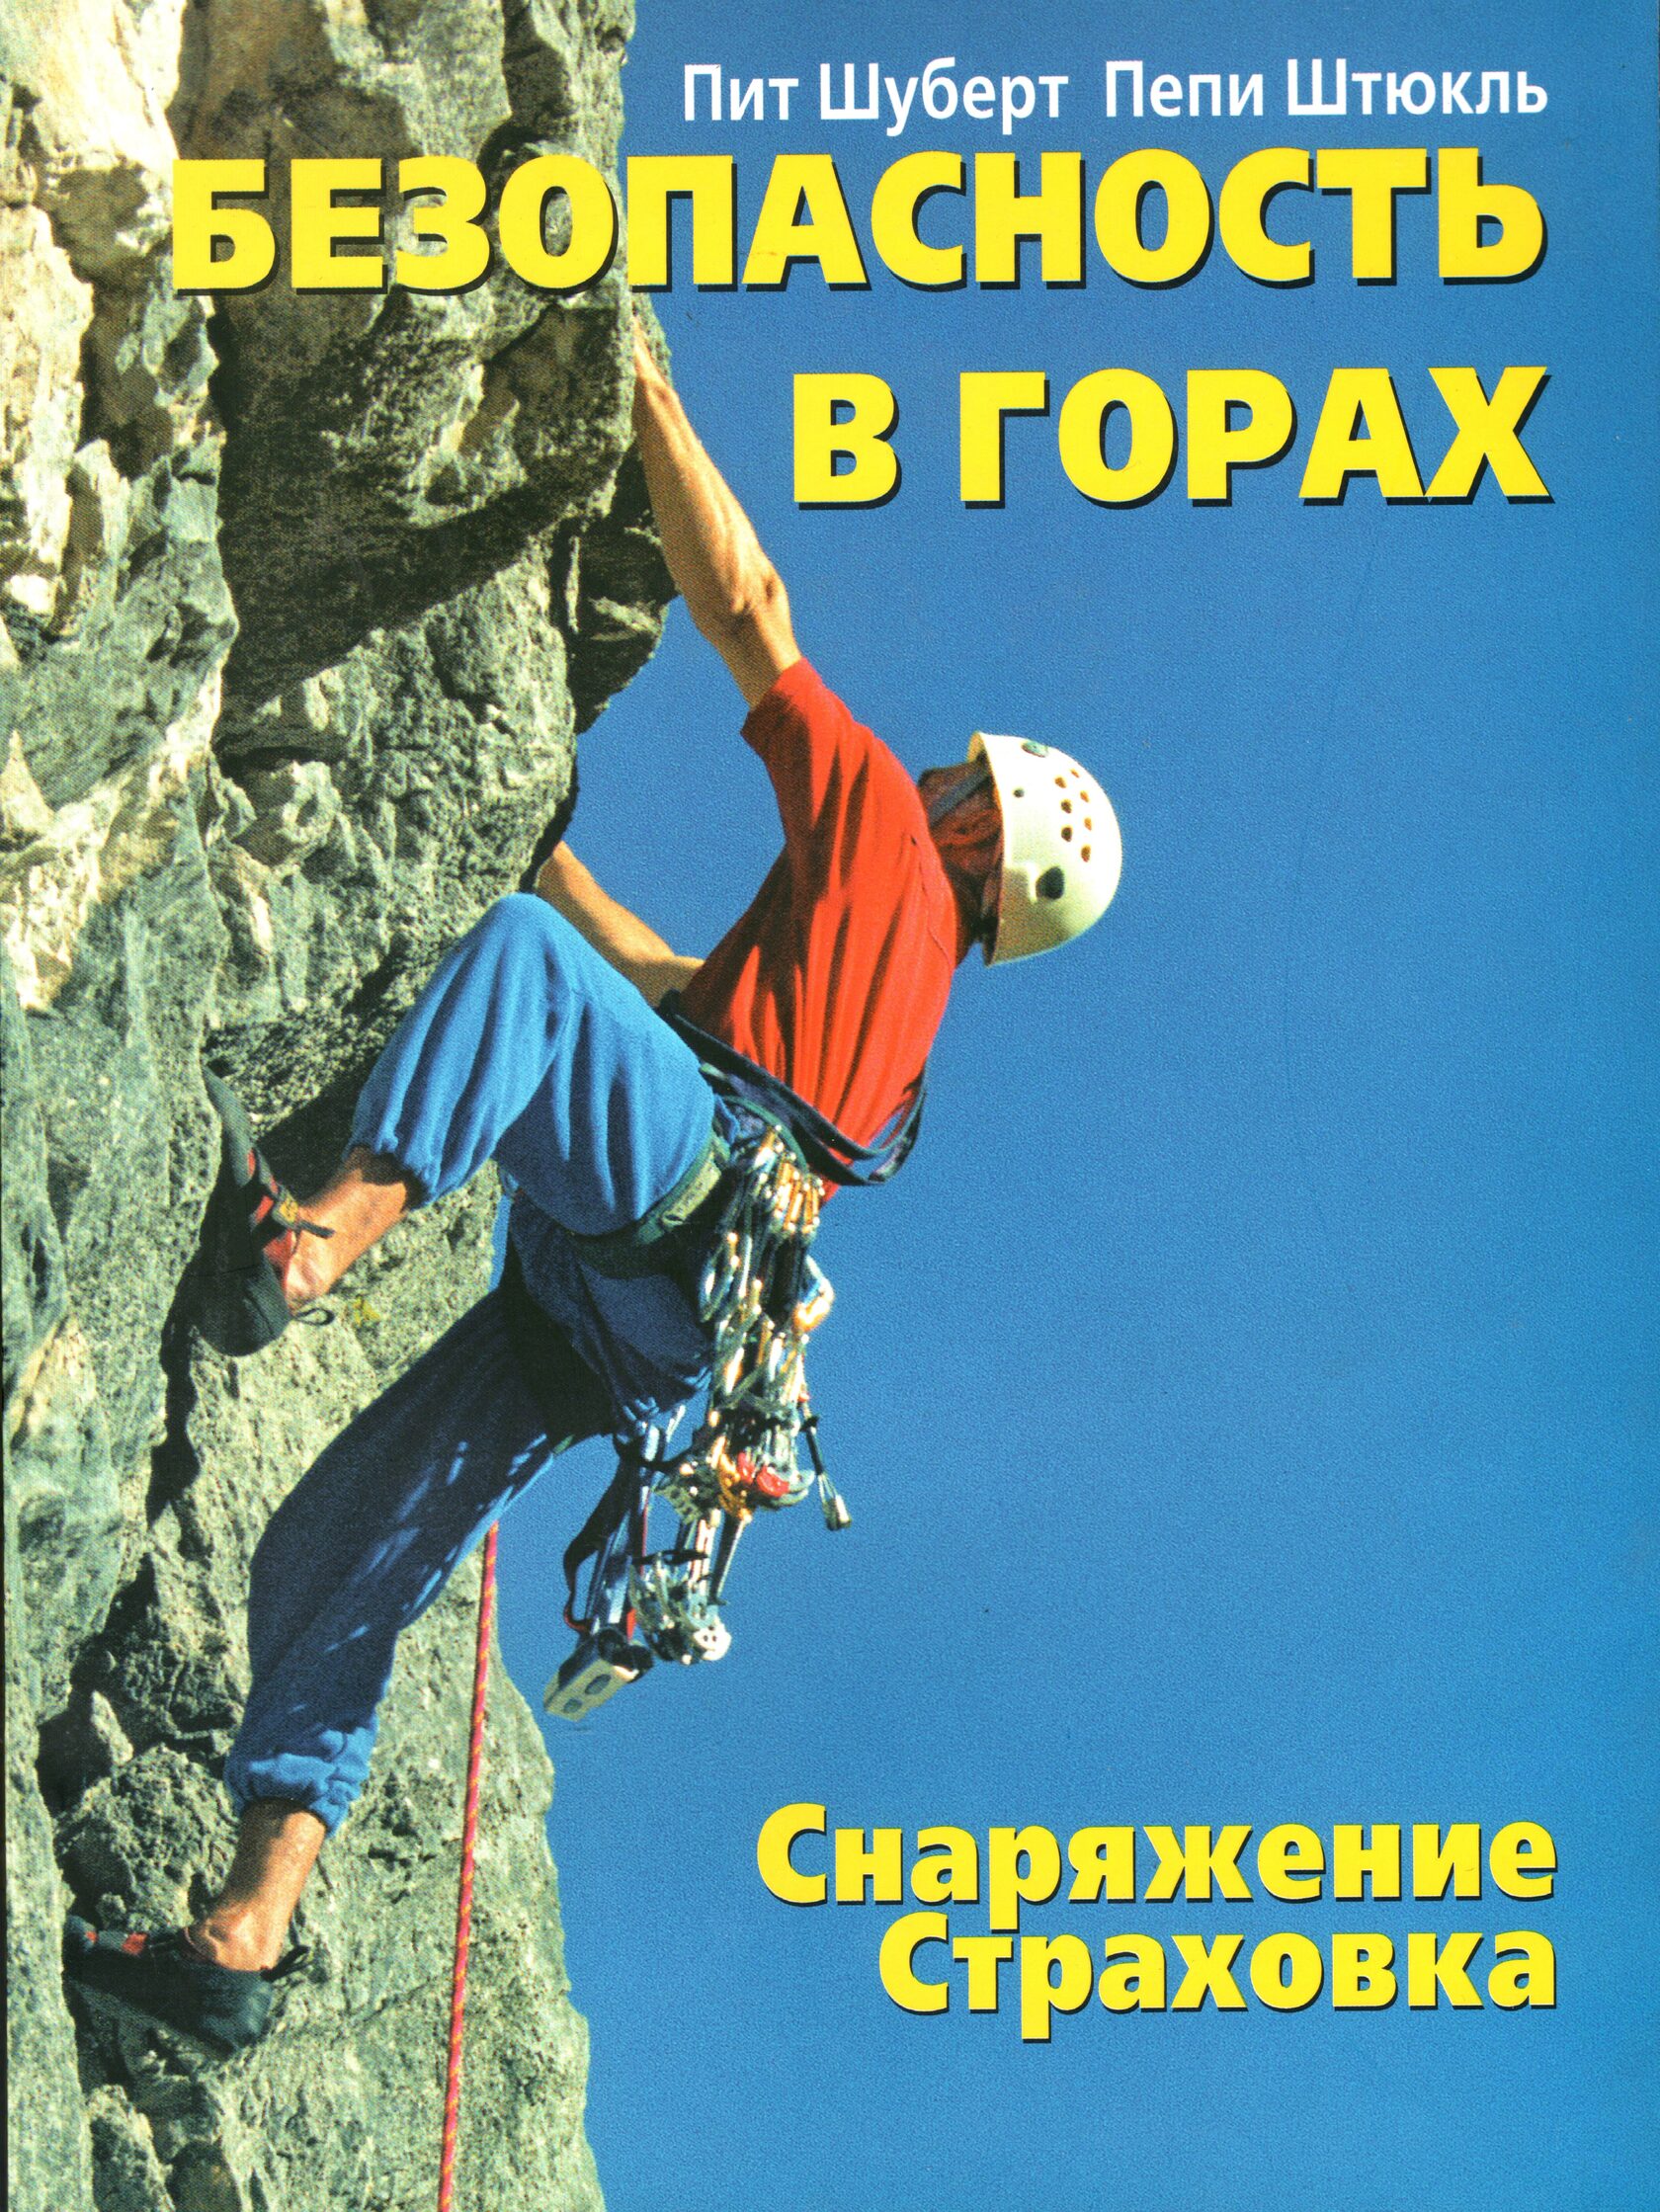 Безопасность на горе. Безопасность в горах. Книги про альпинистов. Скалолаз книга. Книги об альпинизме и горах.